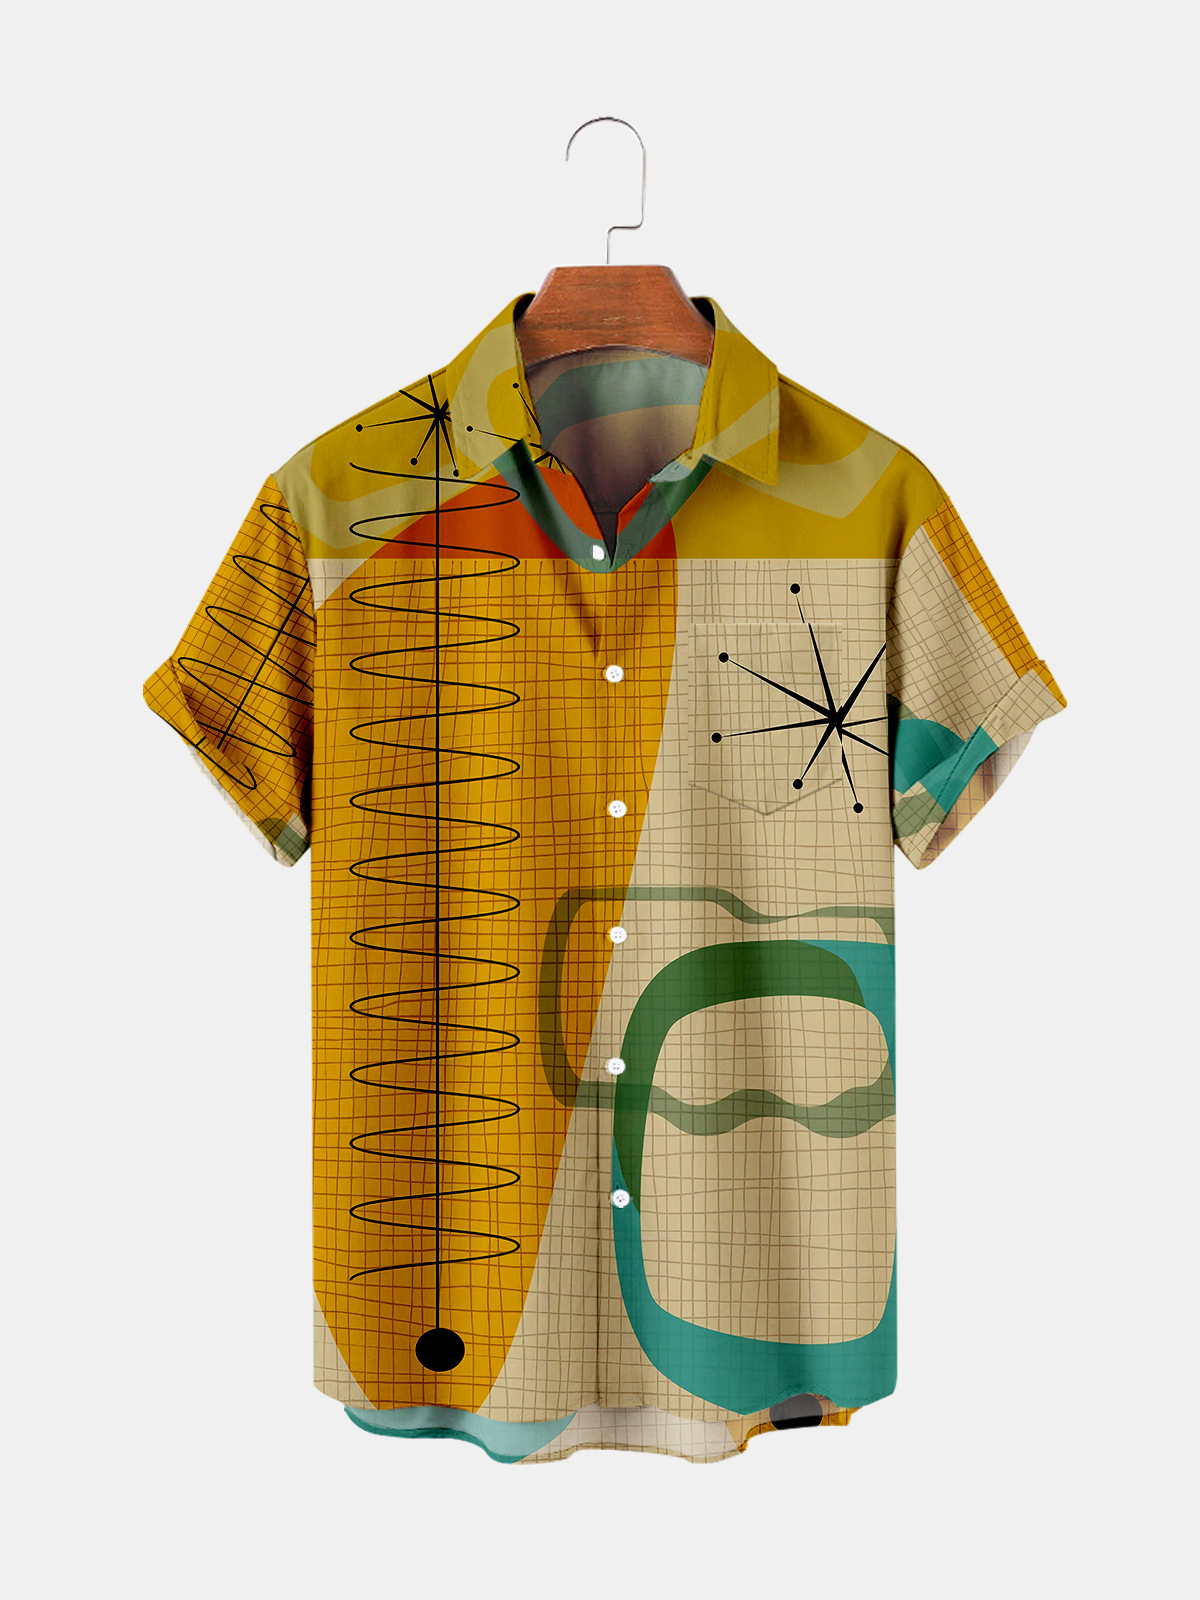 2022 뉴 여름 크리 에이 티브 디자인 하와이 셔츠 남성 여성 싱글 버튼 비치 셔츠 밝은 프린트